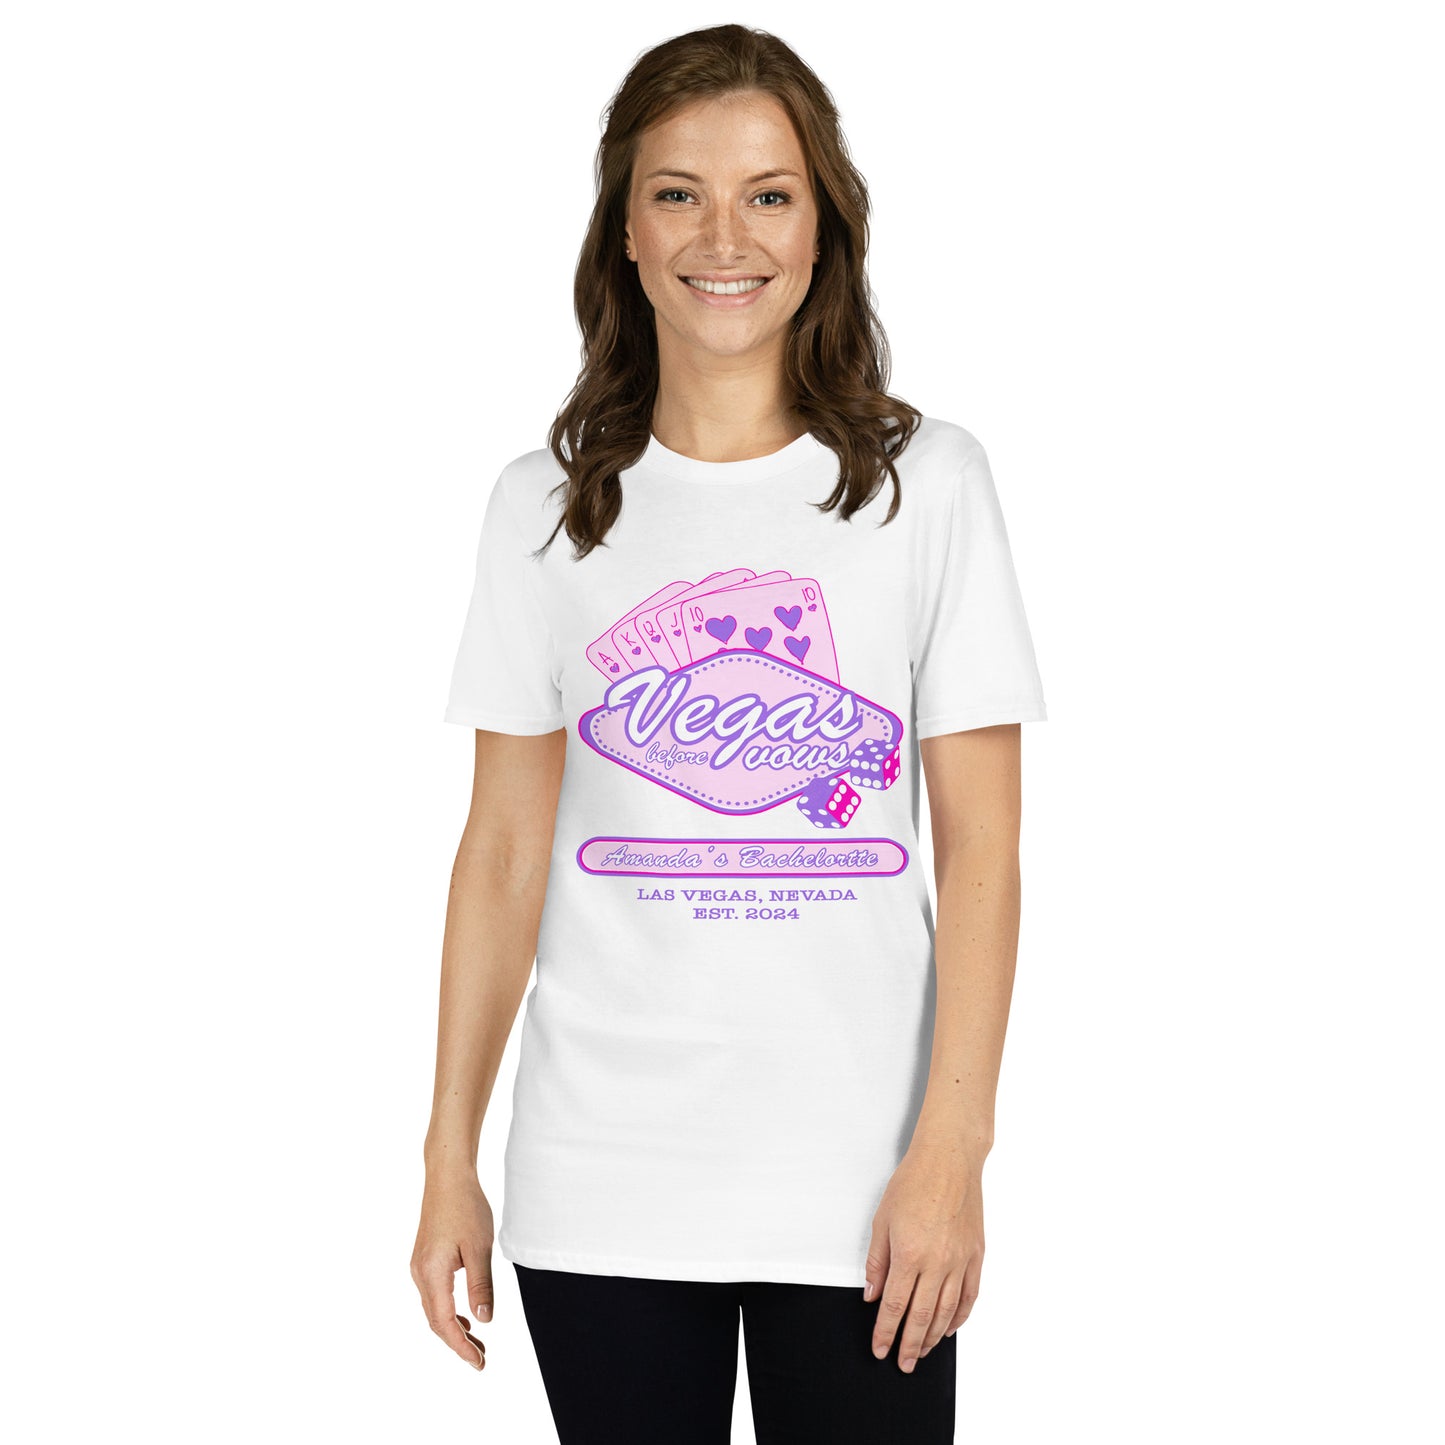 Amanda’s Short-Sleeve Bachelorette T-Shirt